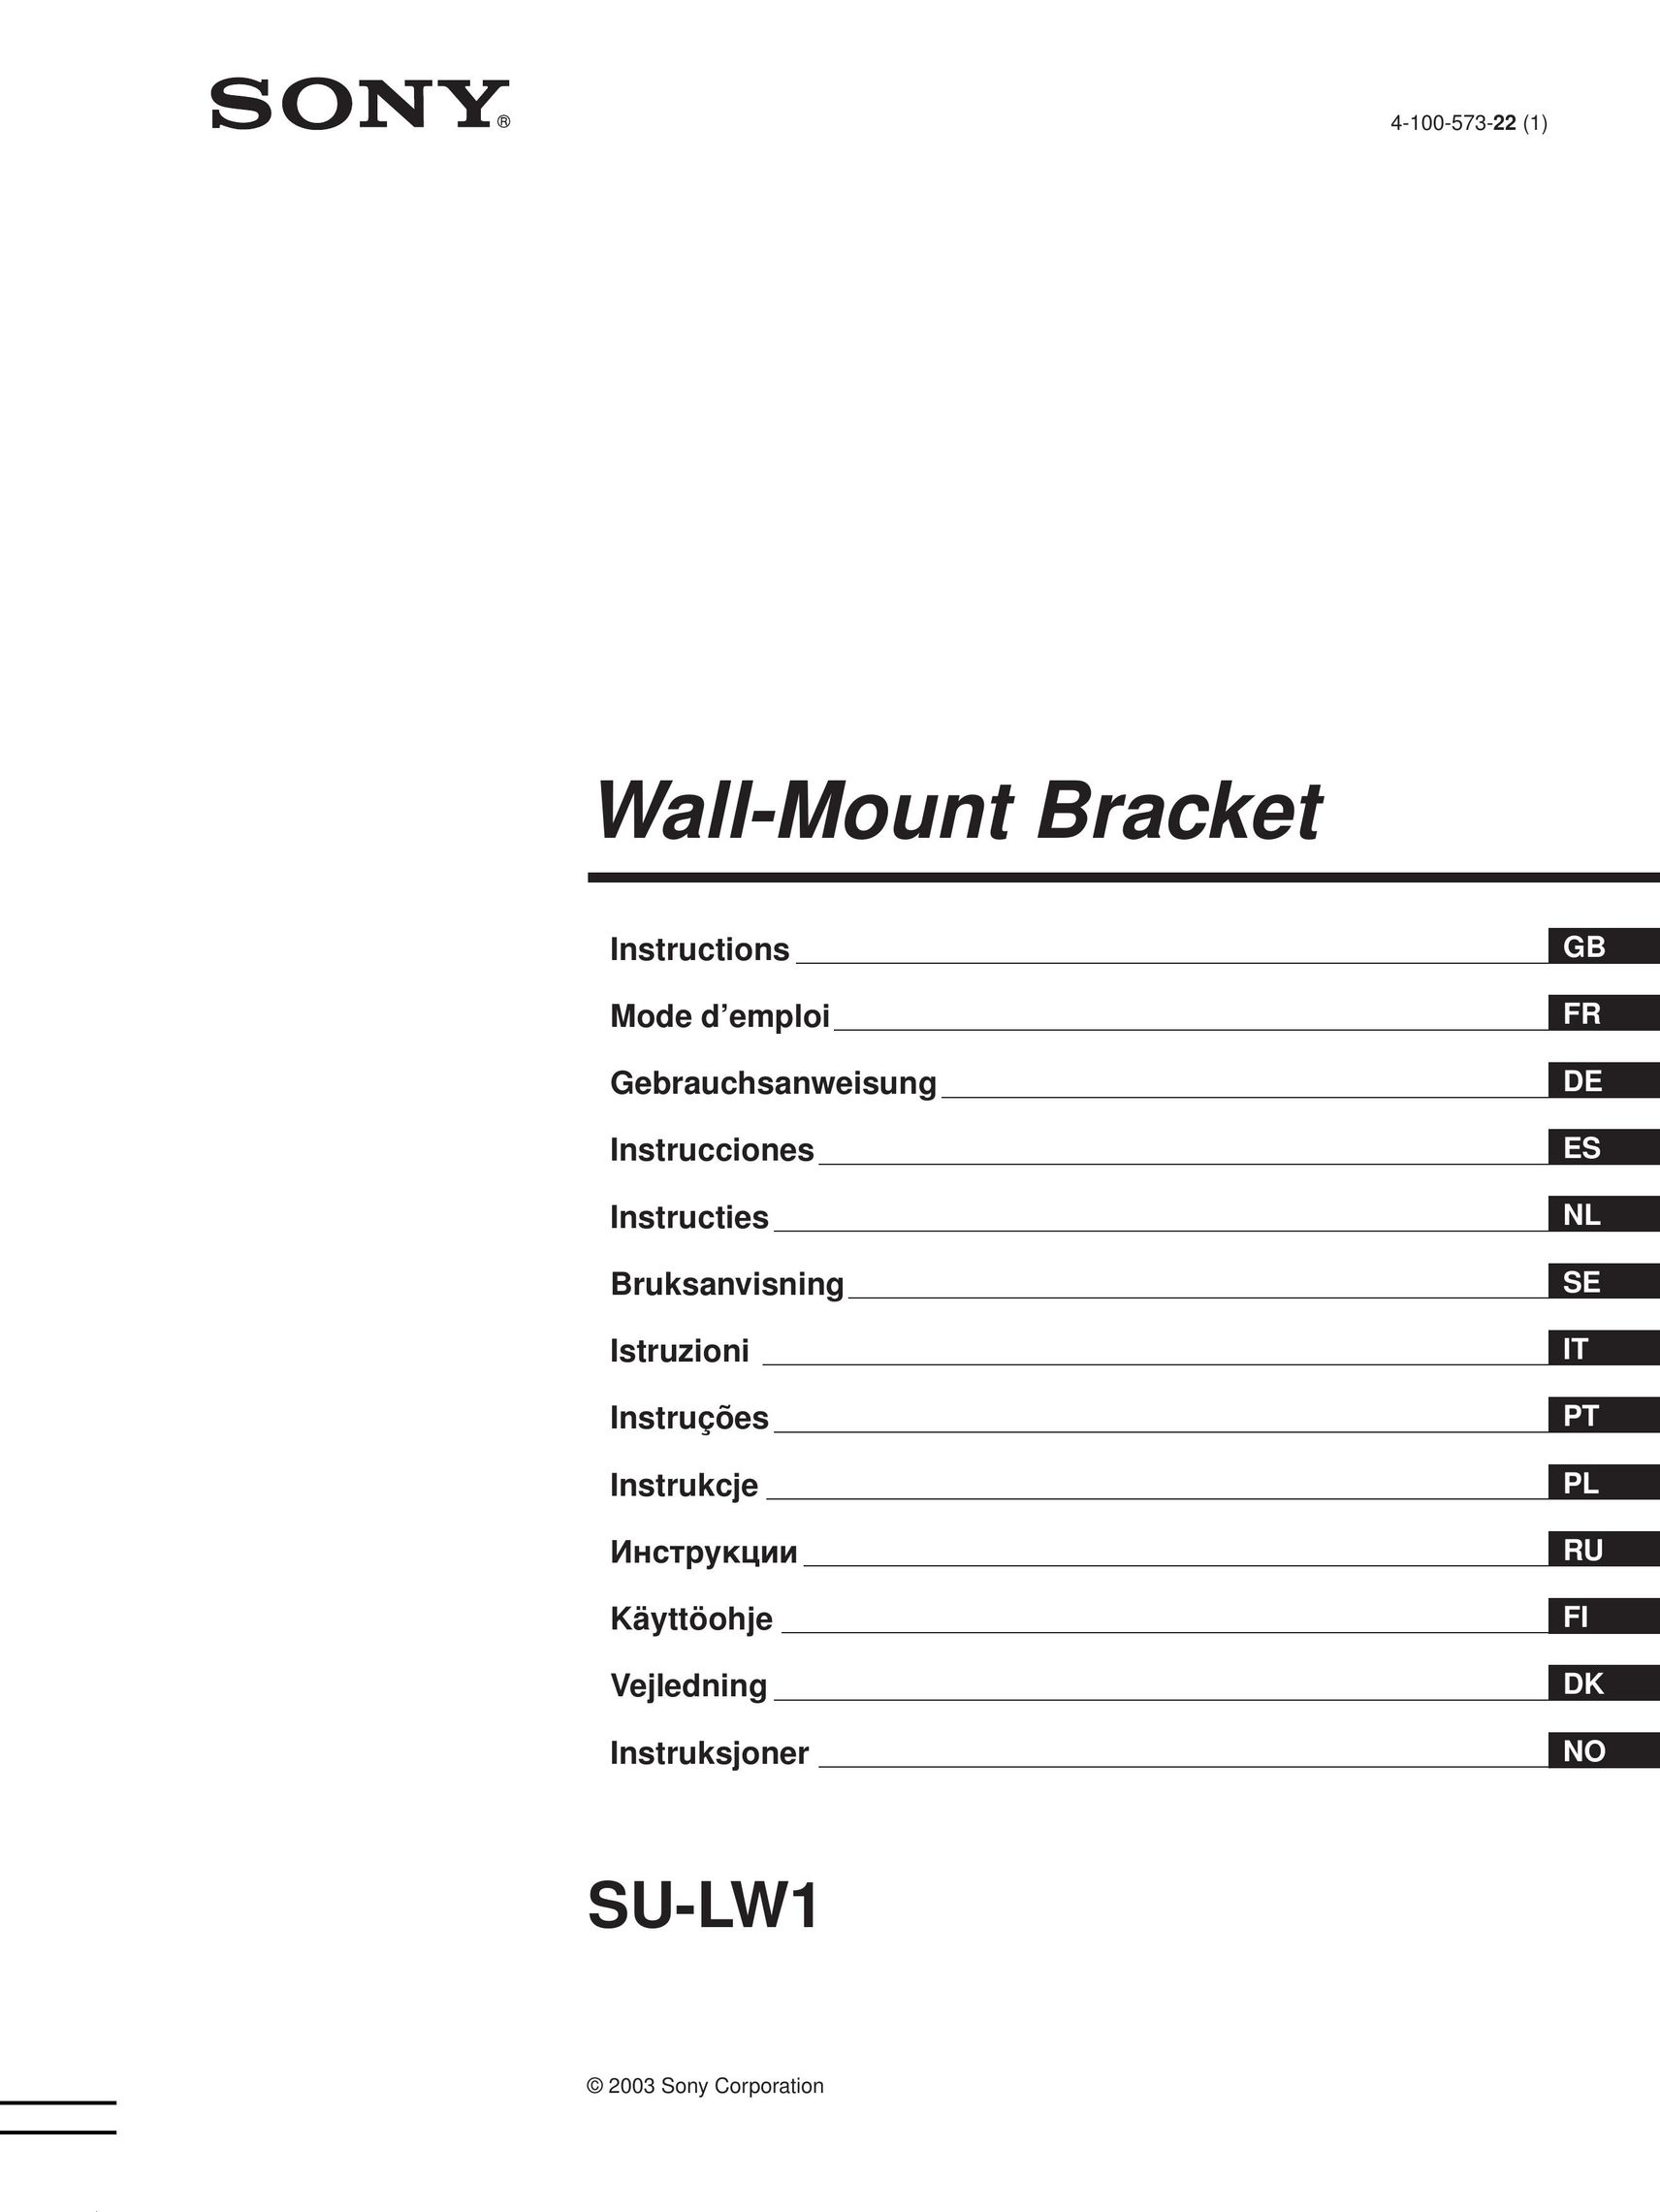 Sony SU-LW1 Indoor Furnishings User Manual